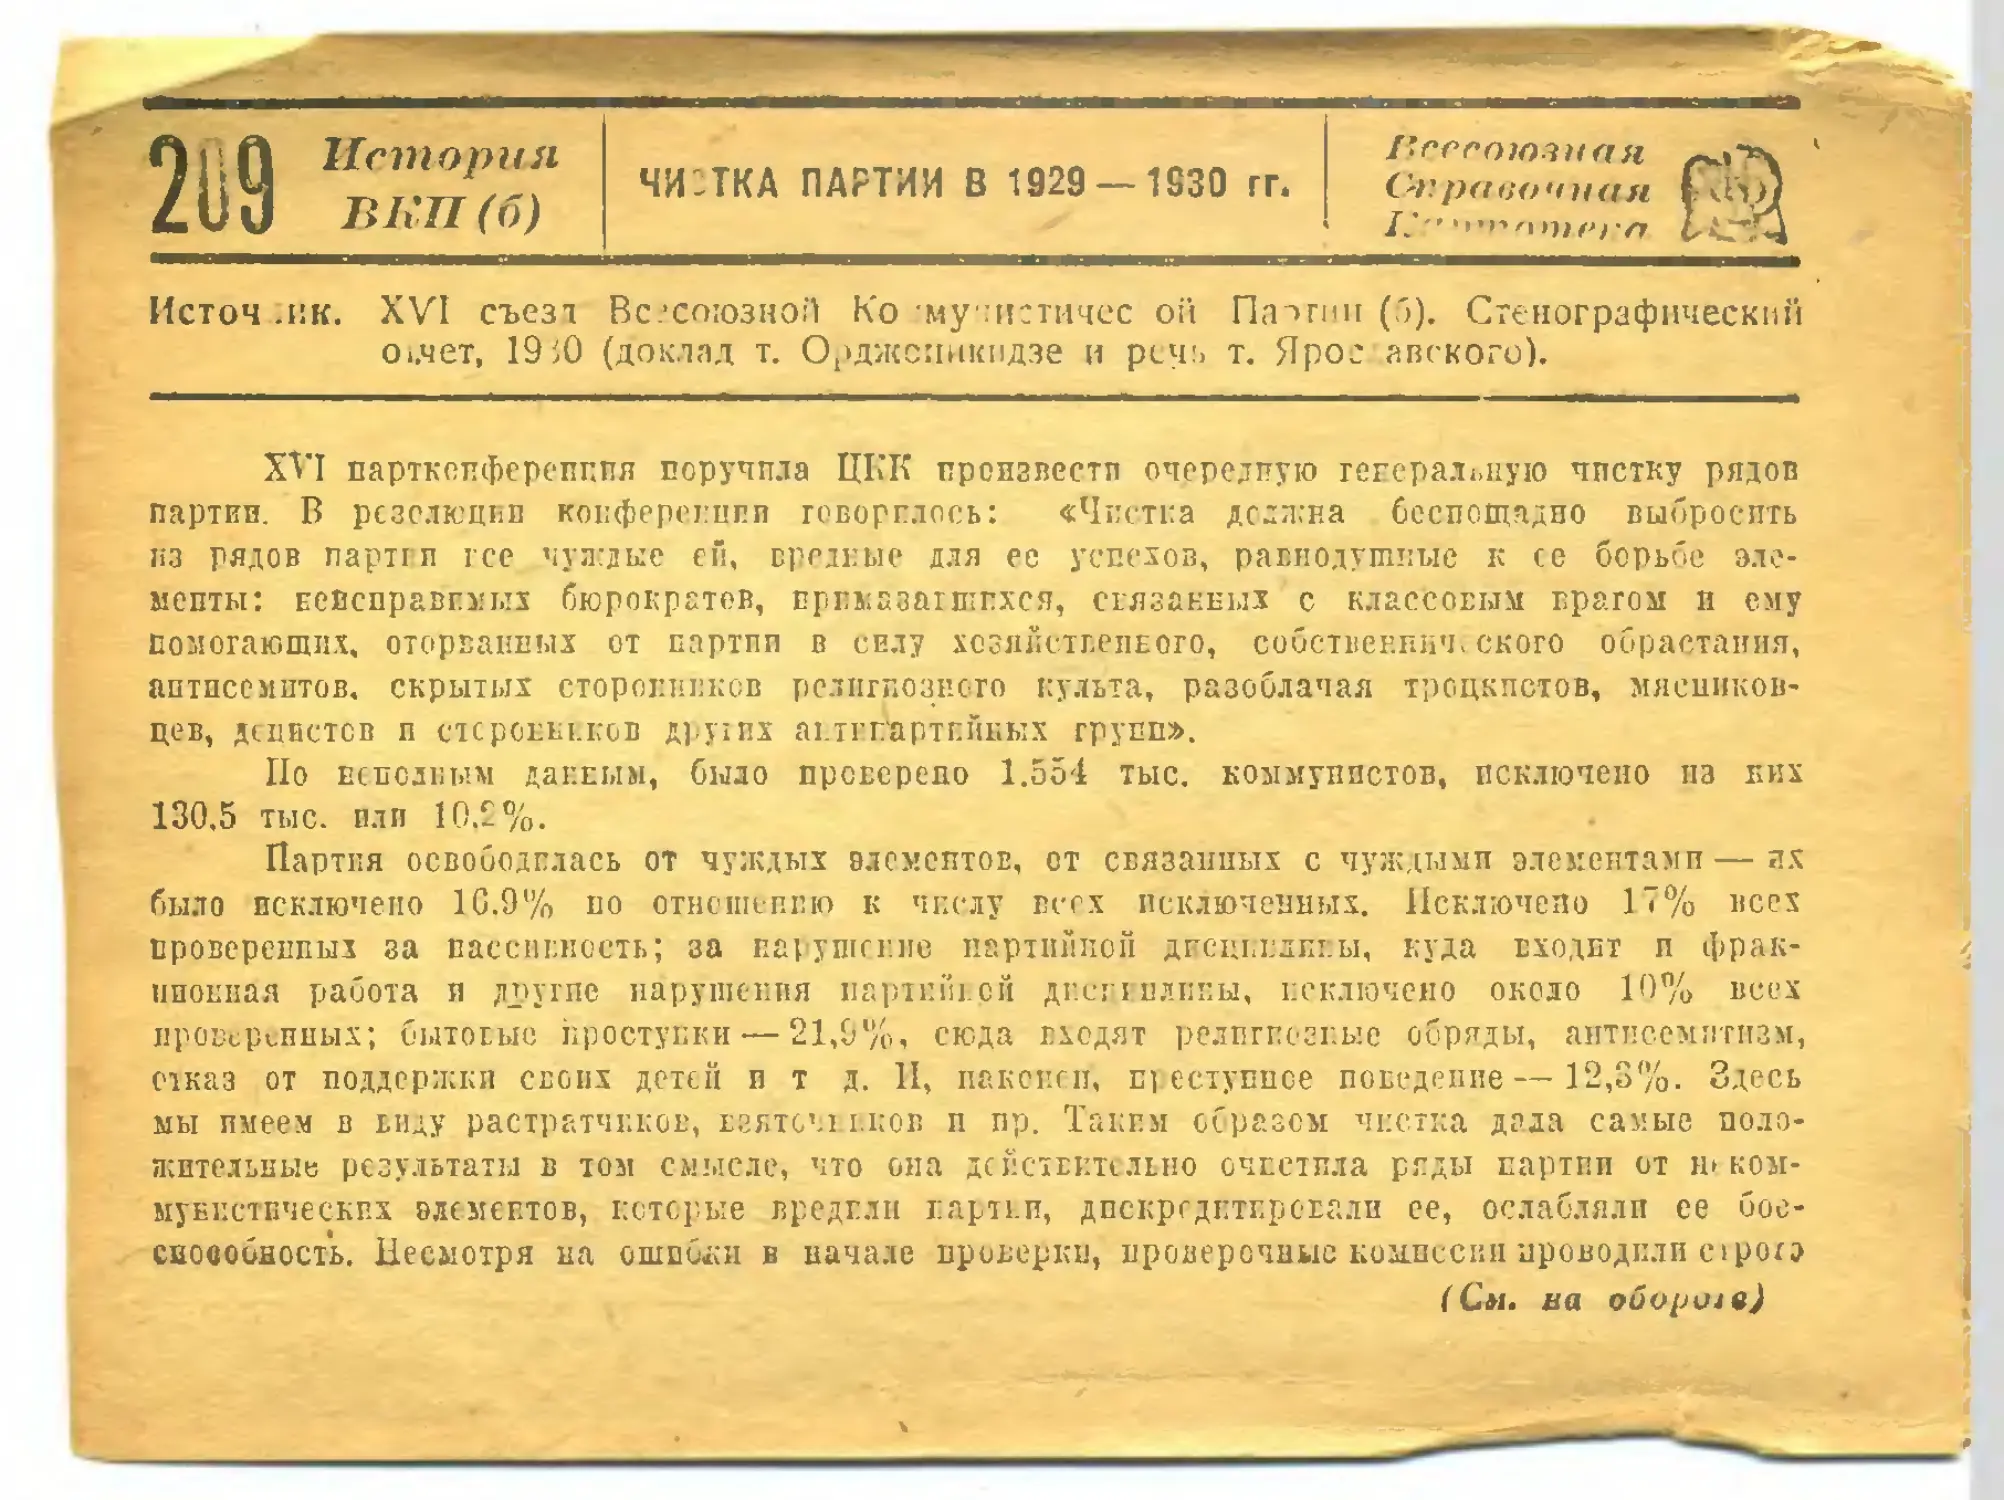 209. Чистка партии в 1929—1930 гг.